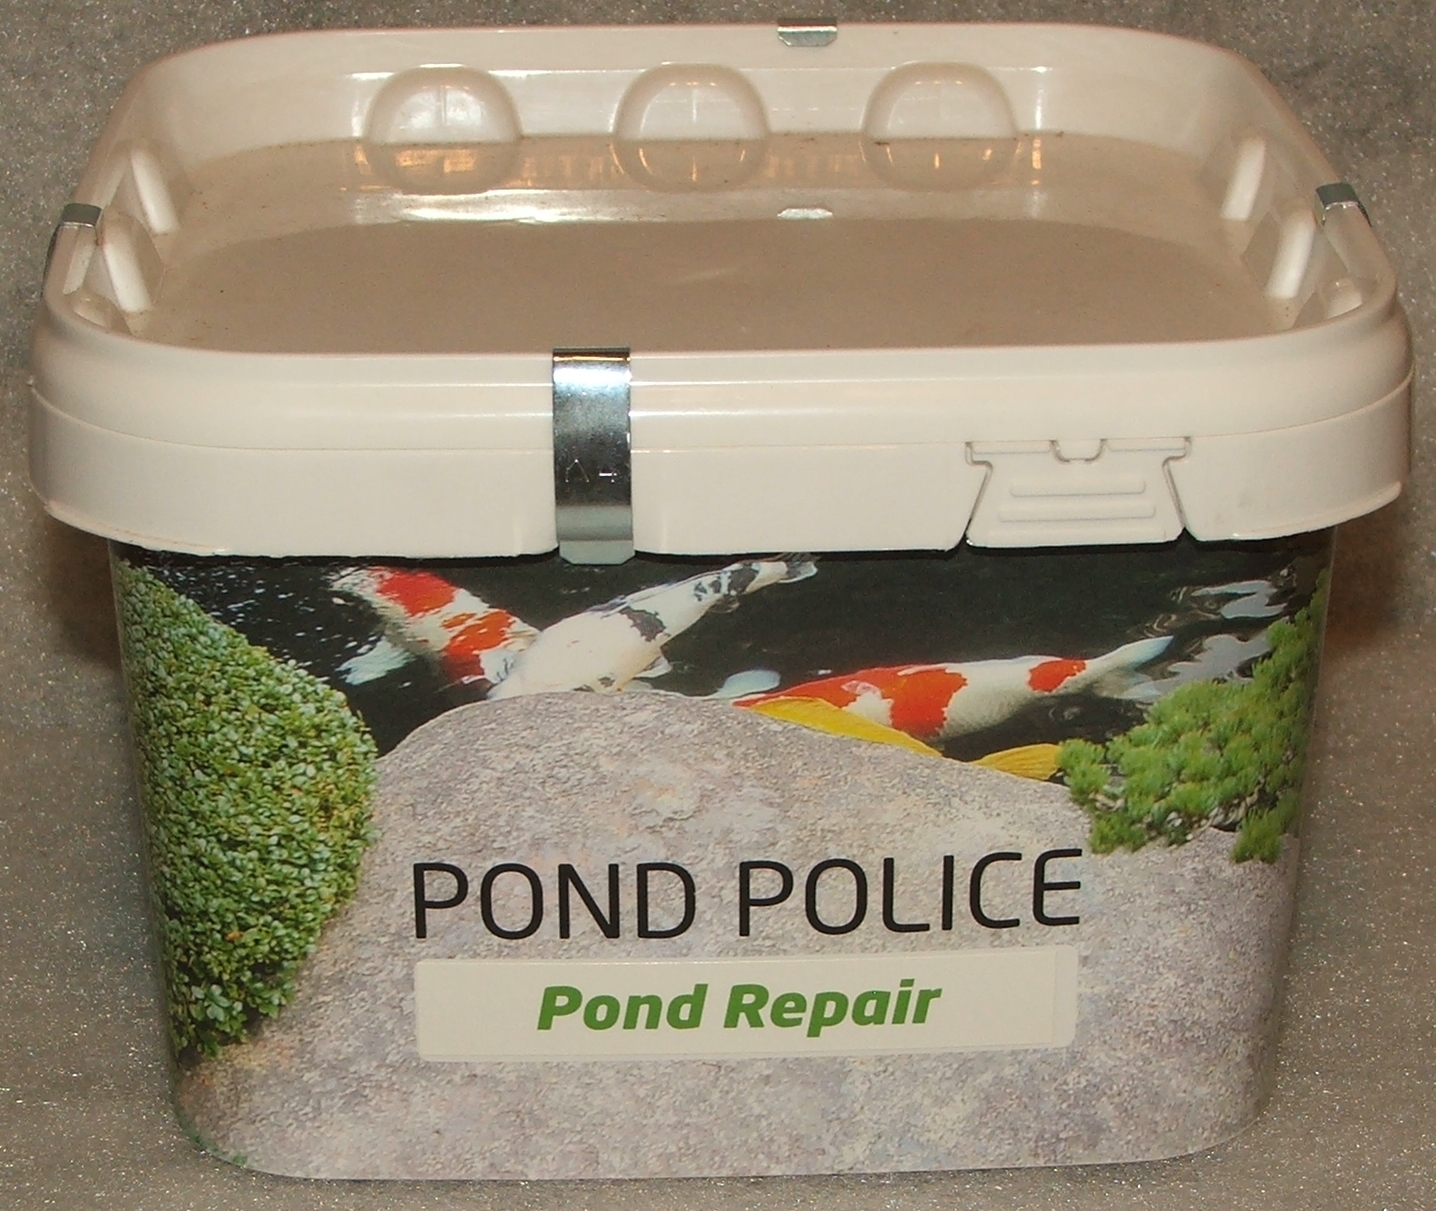 Pond Repair 2,5 kg